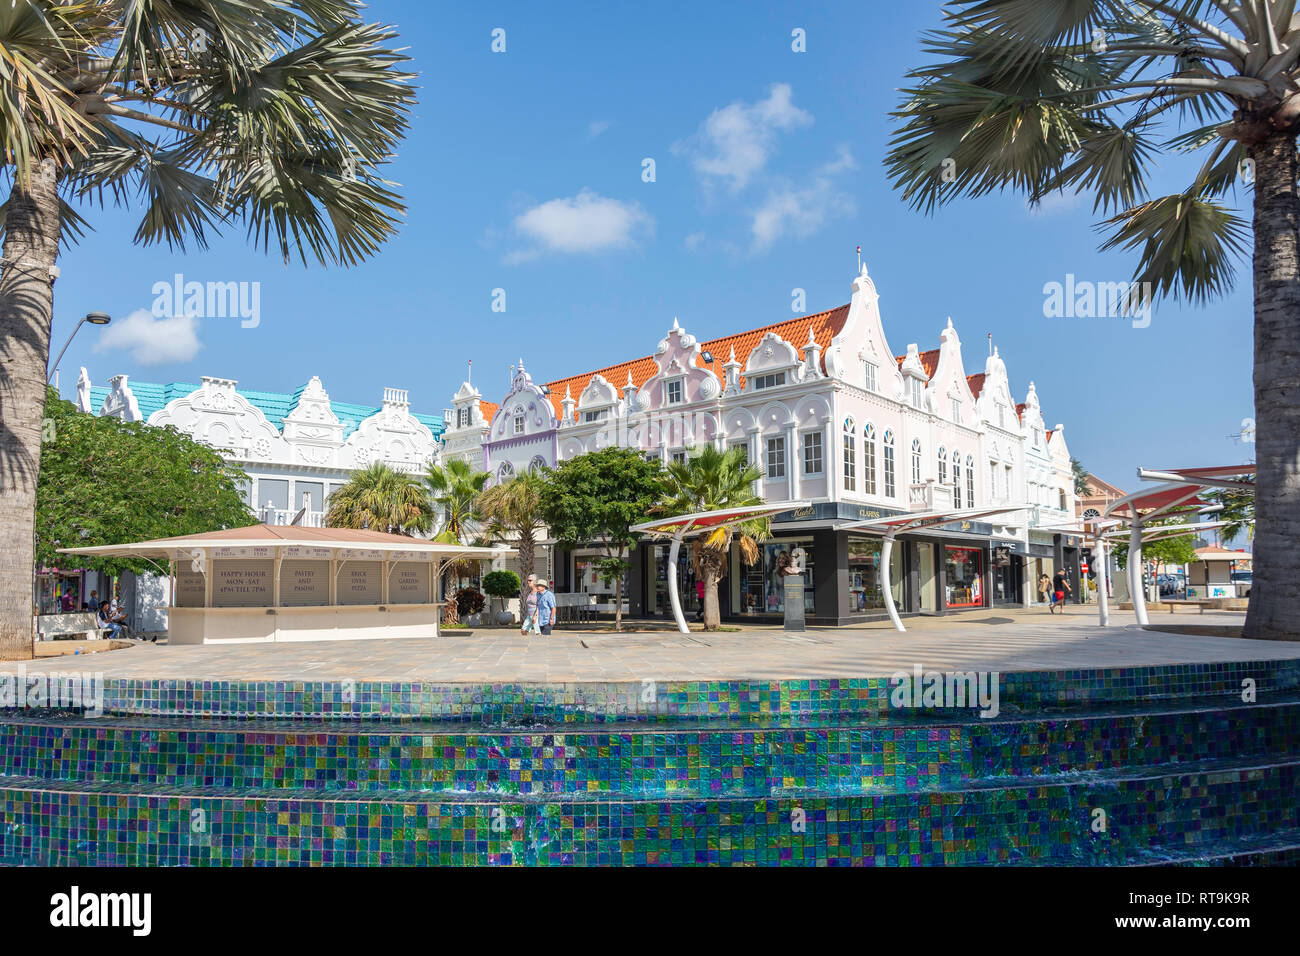 Plaza Daniel Leo mostrando Trevi y edificios de estilo colonial holandés, Oranjestad, Aruba, ABC islas de Sotavento, Antillas, Caribe Foto de stock